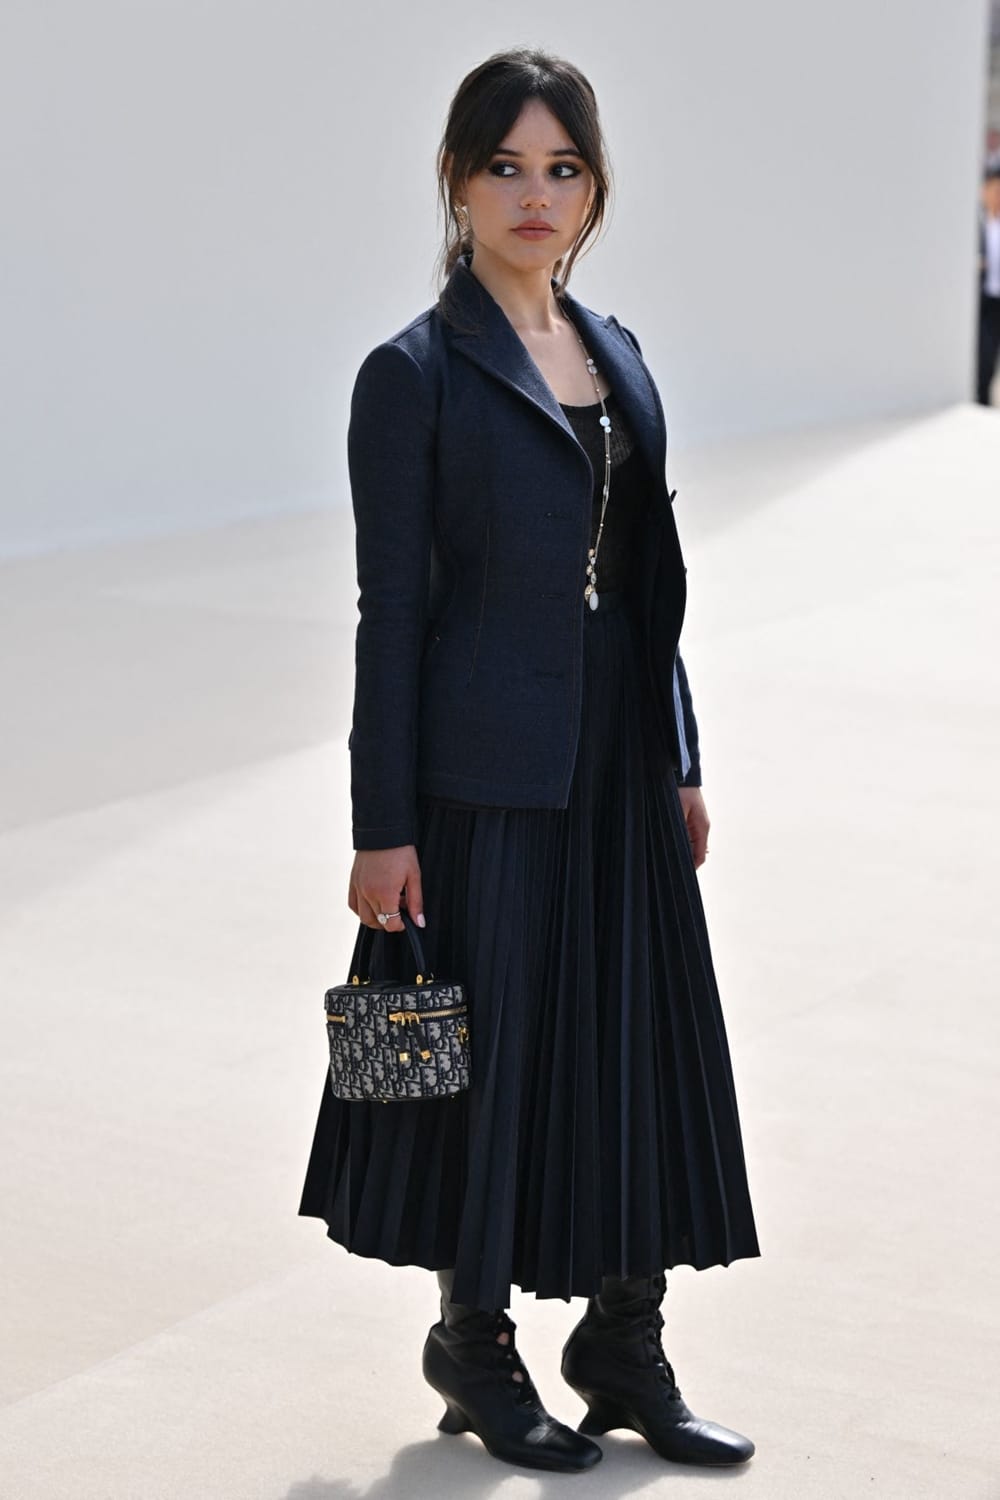 Selebriti Hollywood dan pelakon siri Wednesday, Jenna Ortega hadir di persembahan fesyen Dior